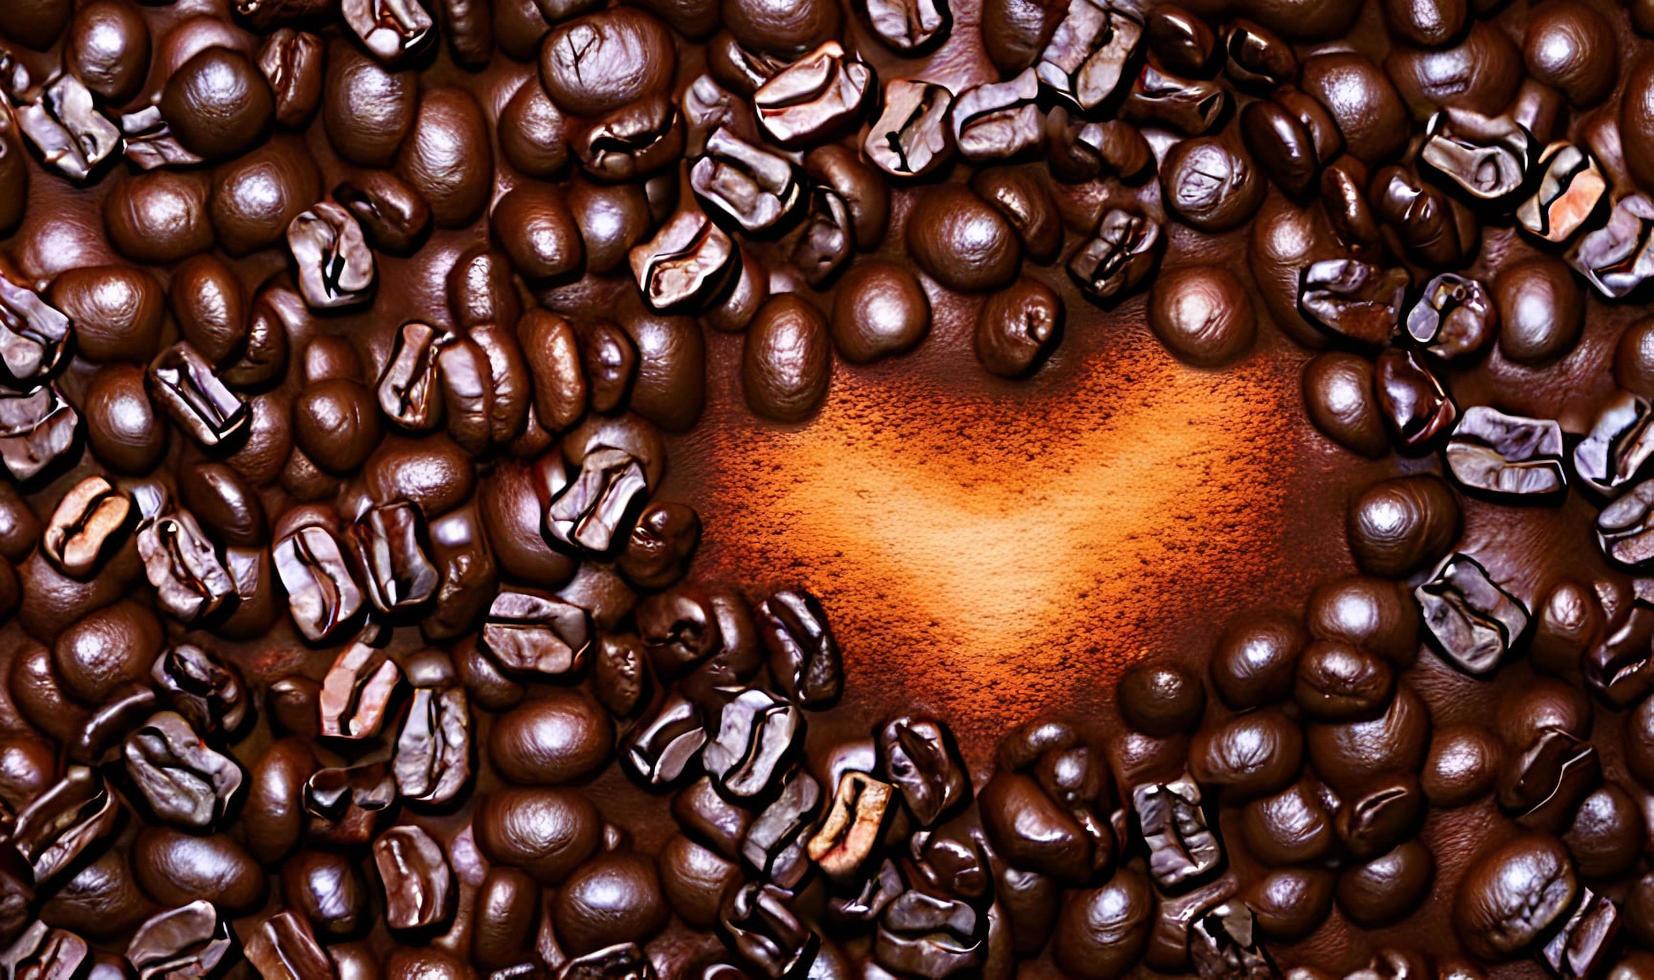 granos de café recién tostados. Puede ser usado como fondo. composición del café. foto